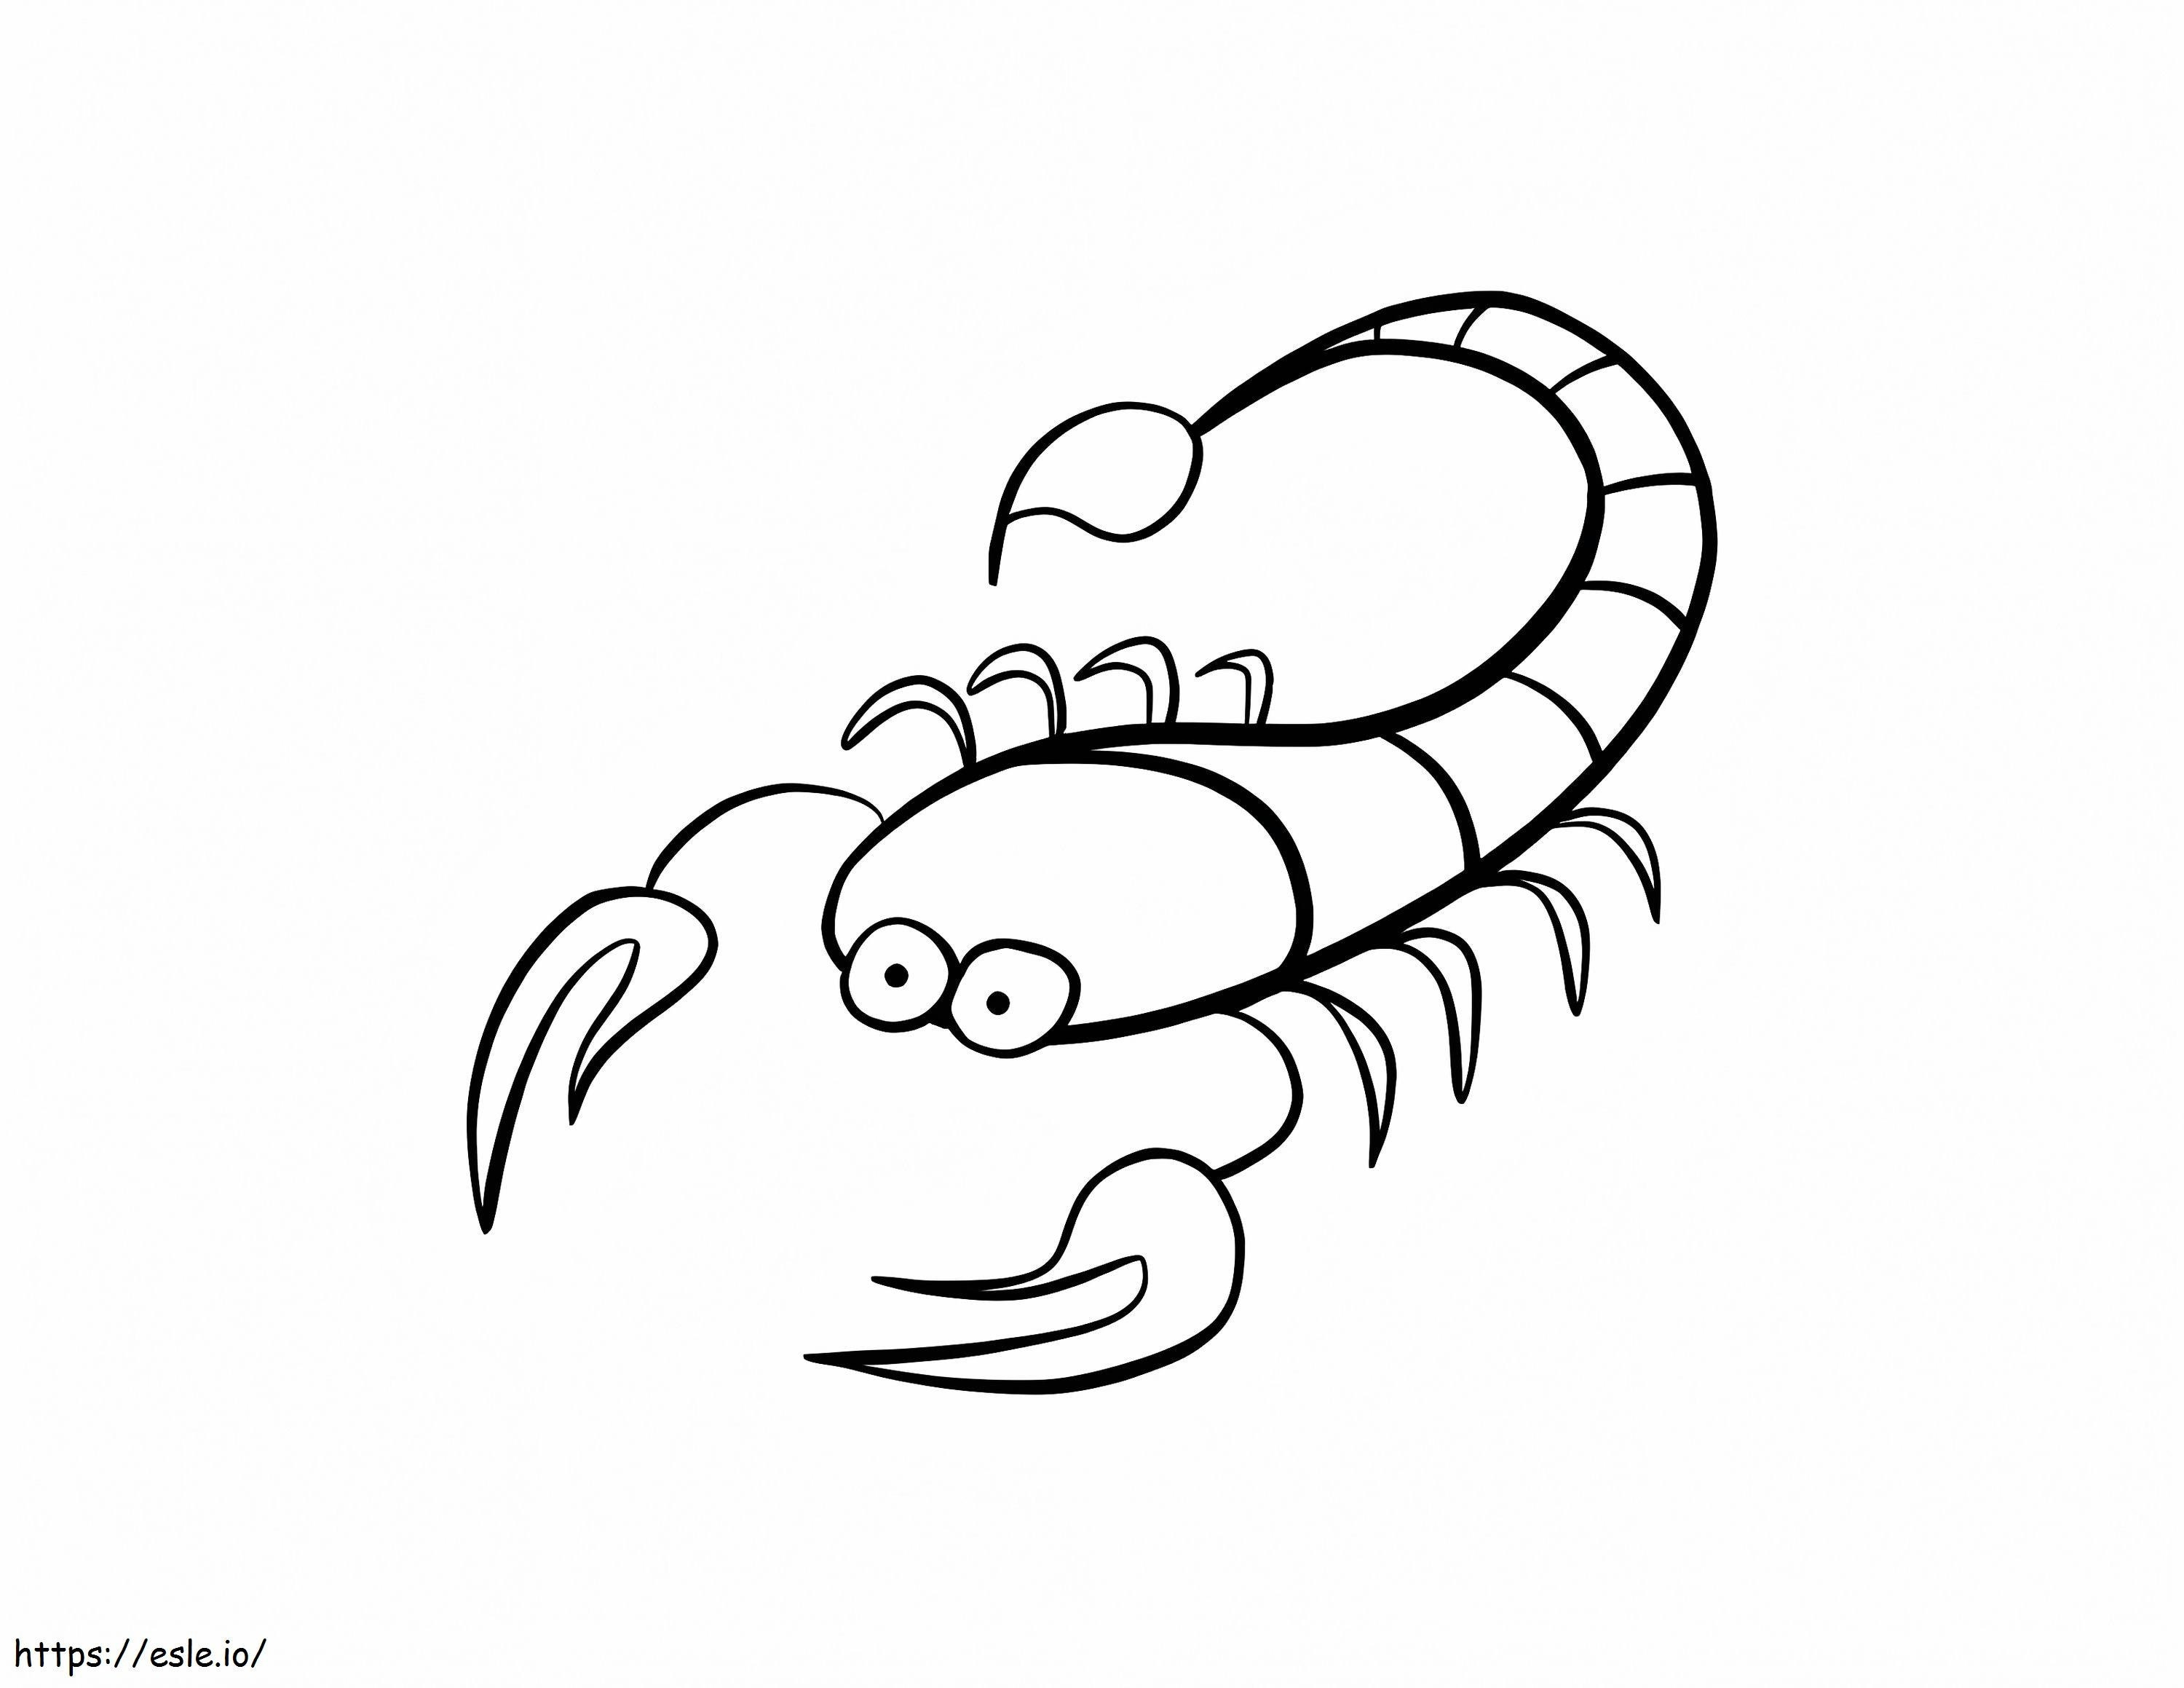 Kleiner Skorpion ausmalbilder